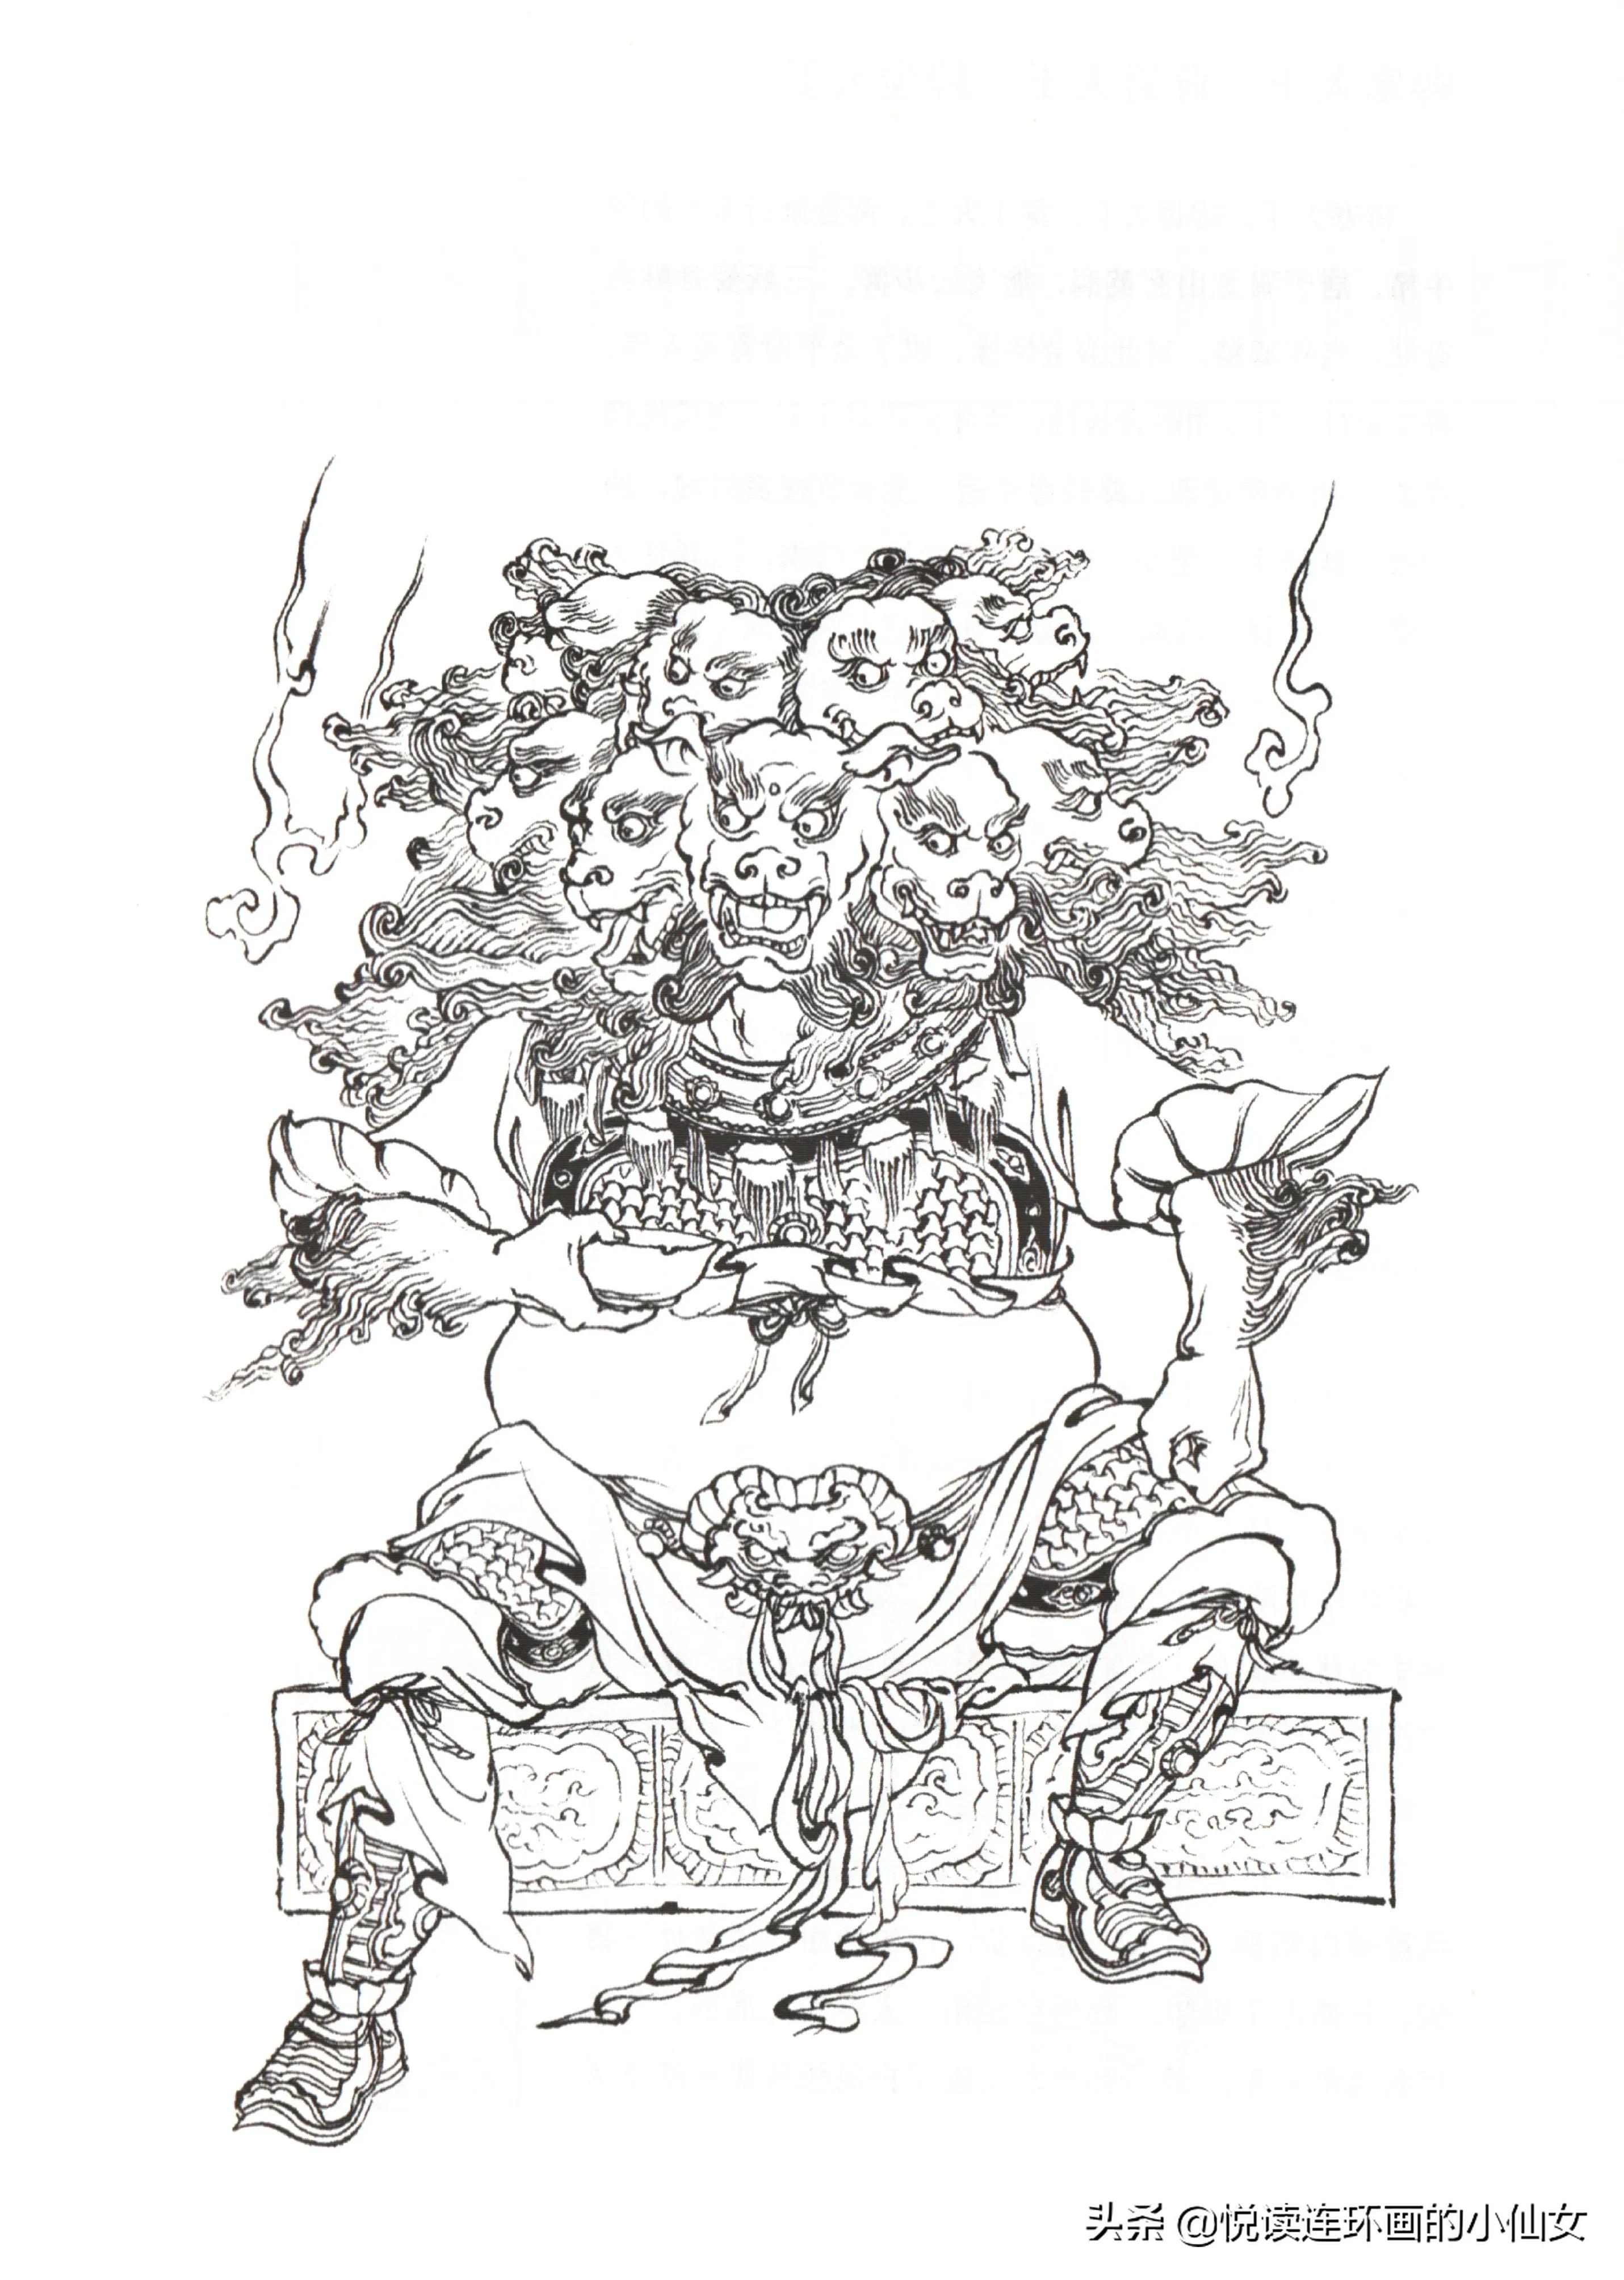 西游记神魔人物画谱，李云中绘插图(177)